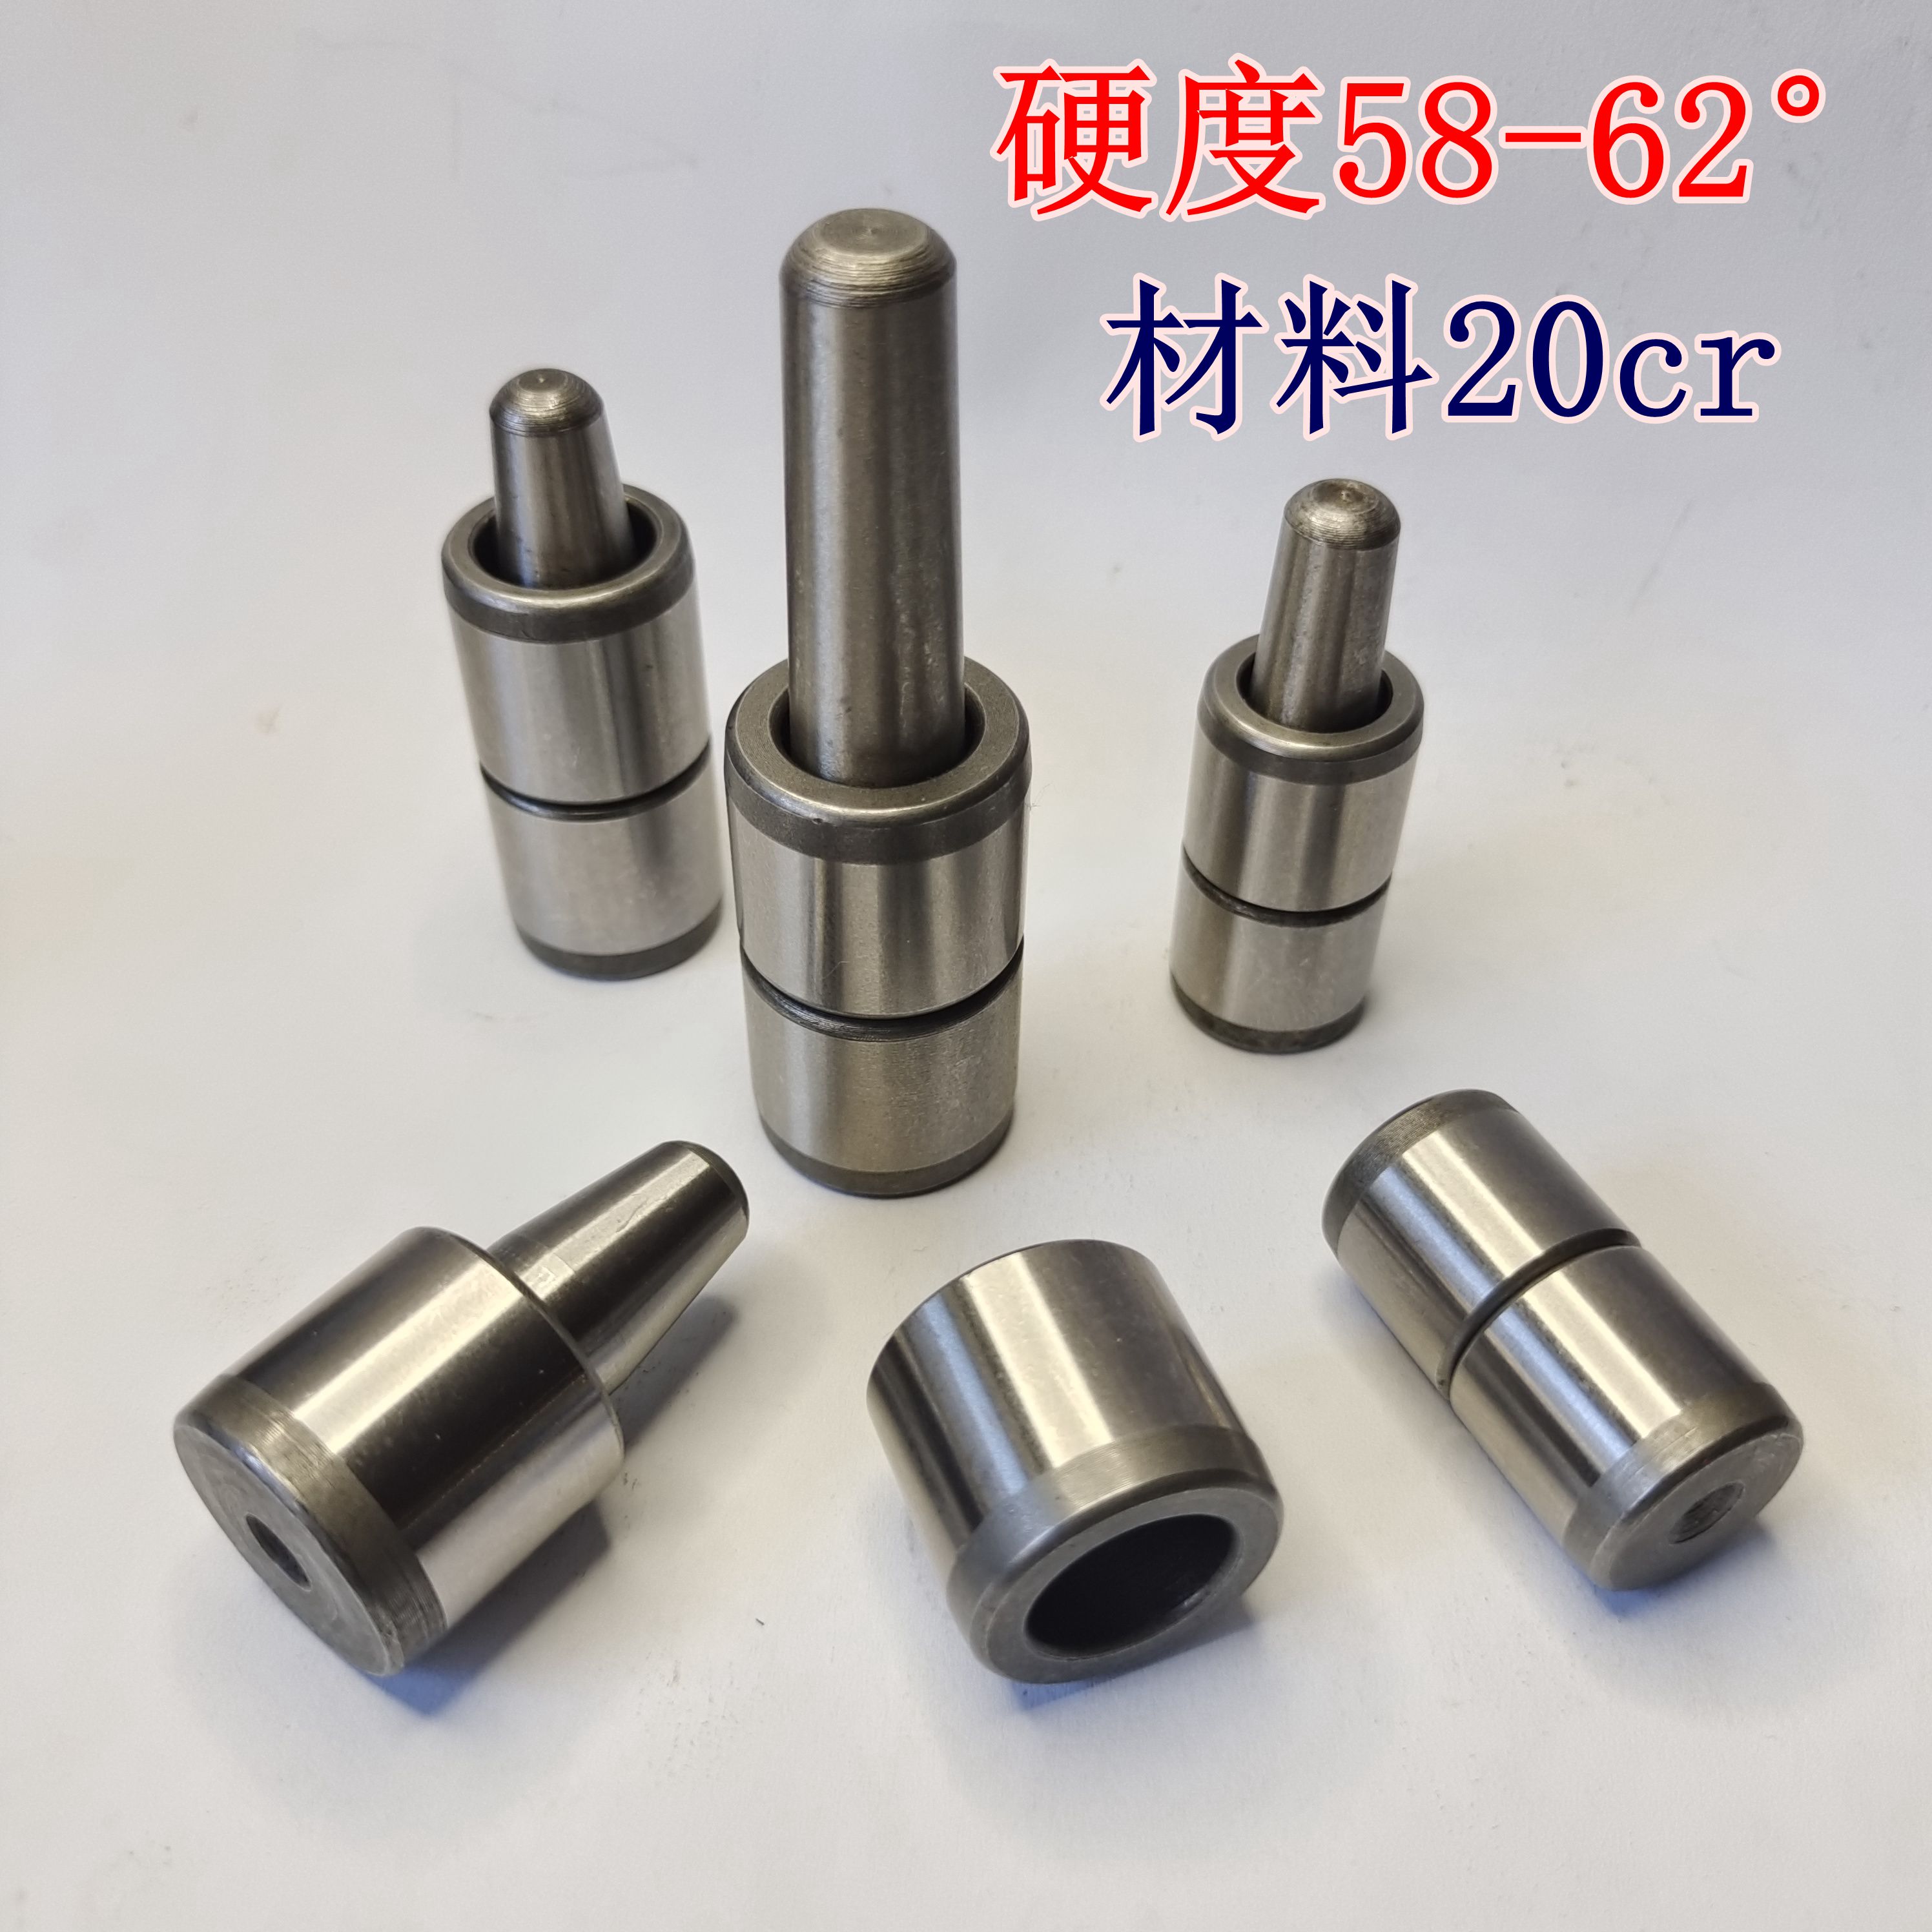 20mm橡胶硅胶模具导柱导套精准定位销套比例导柱材质20cr硬度62±